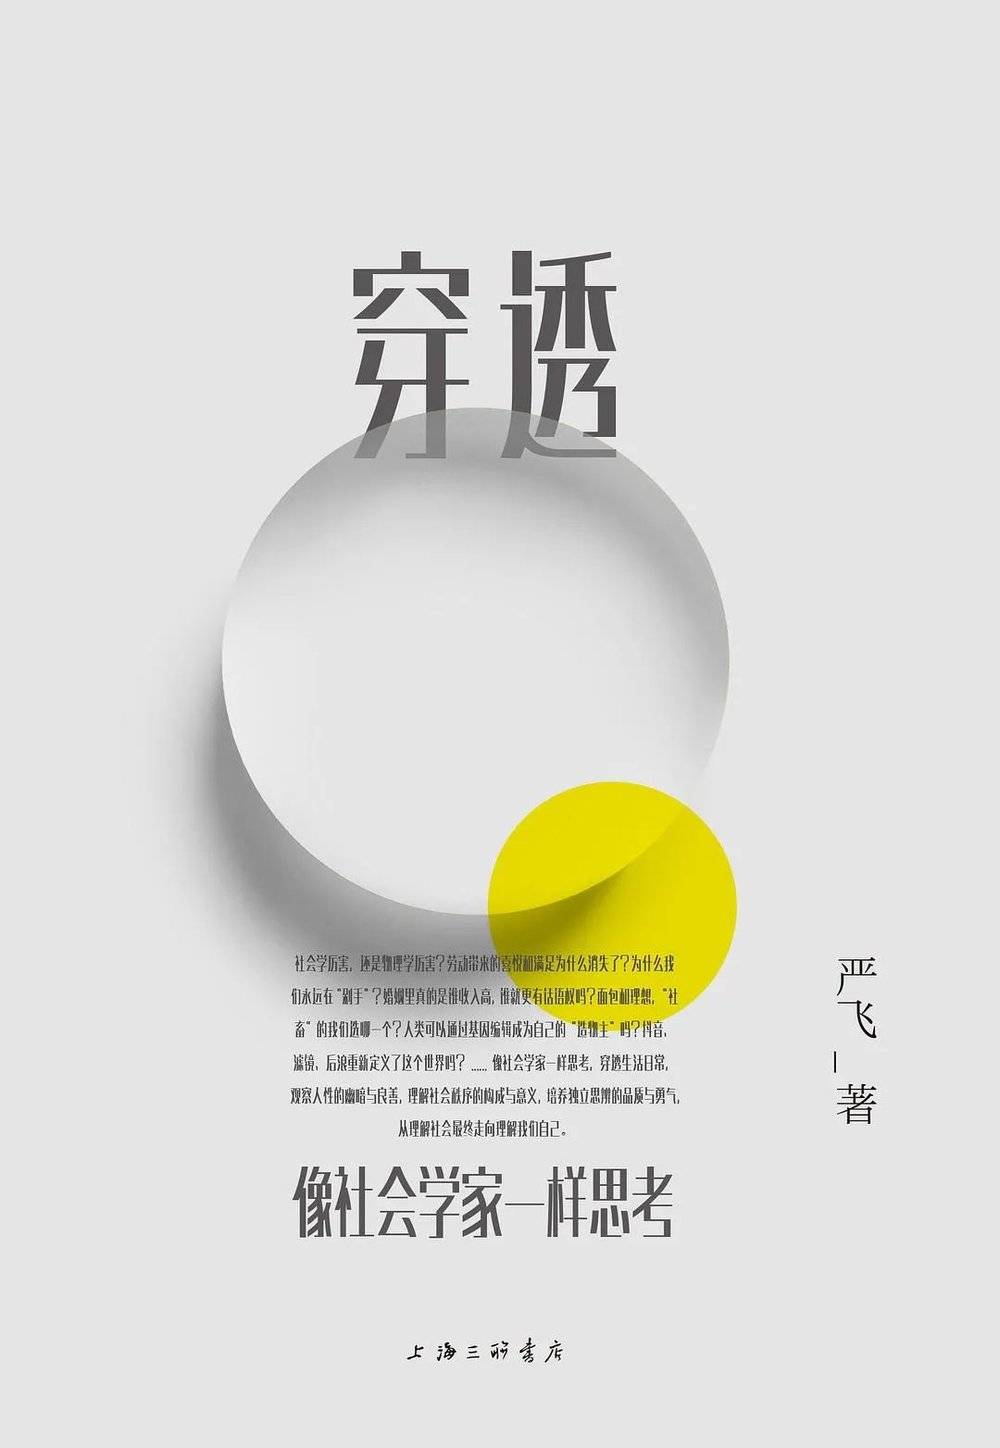 穿透：像社会学家一样思考，严飞 / 著，上海三联书店 2020